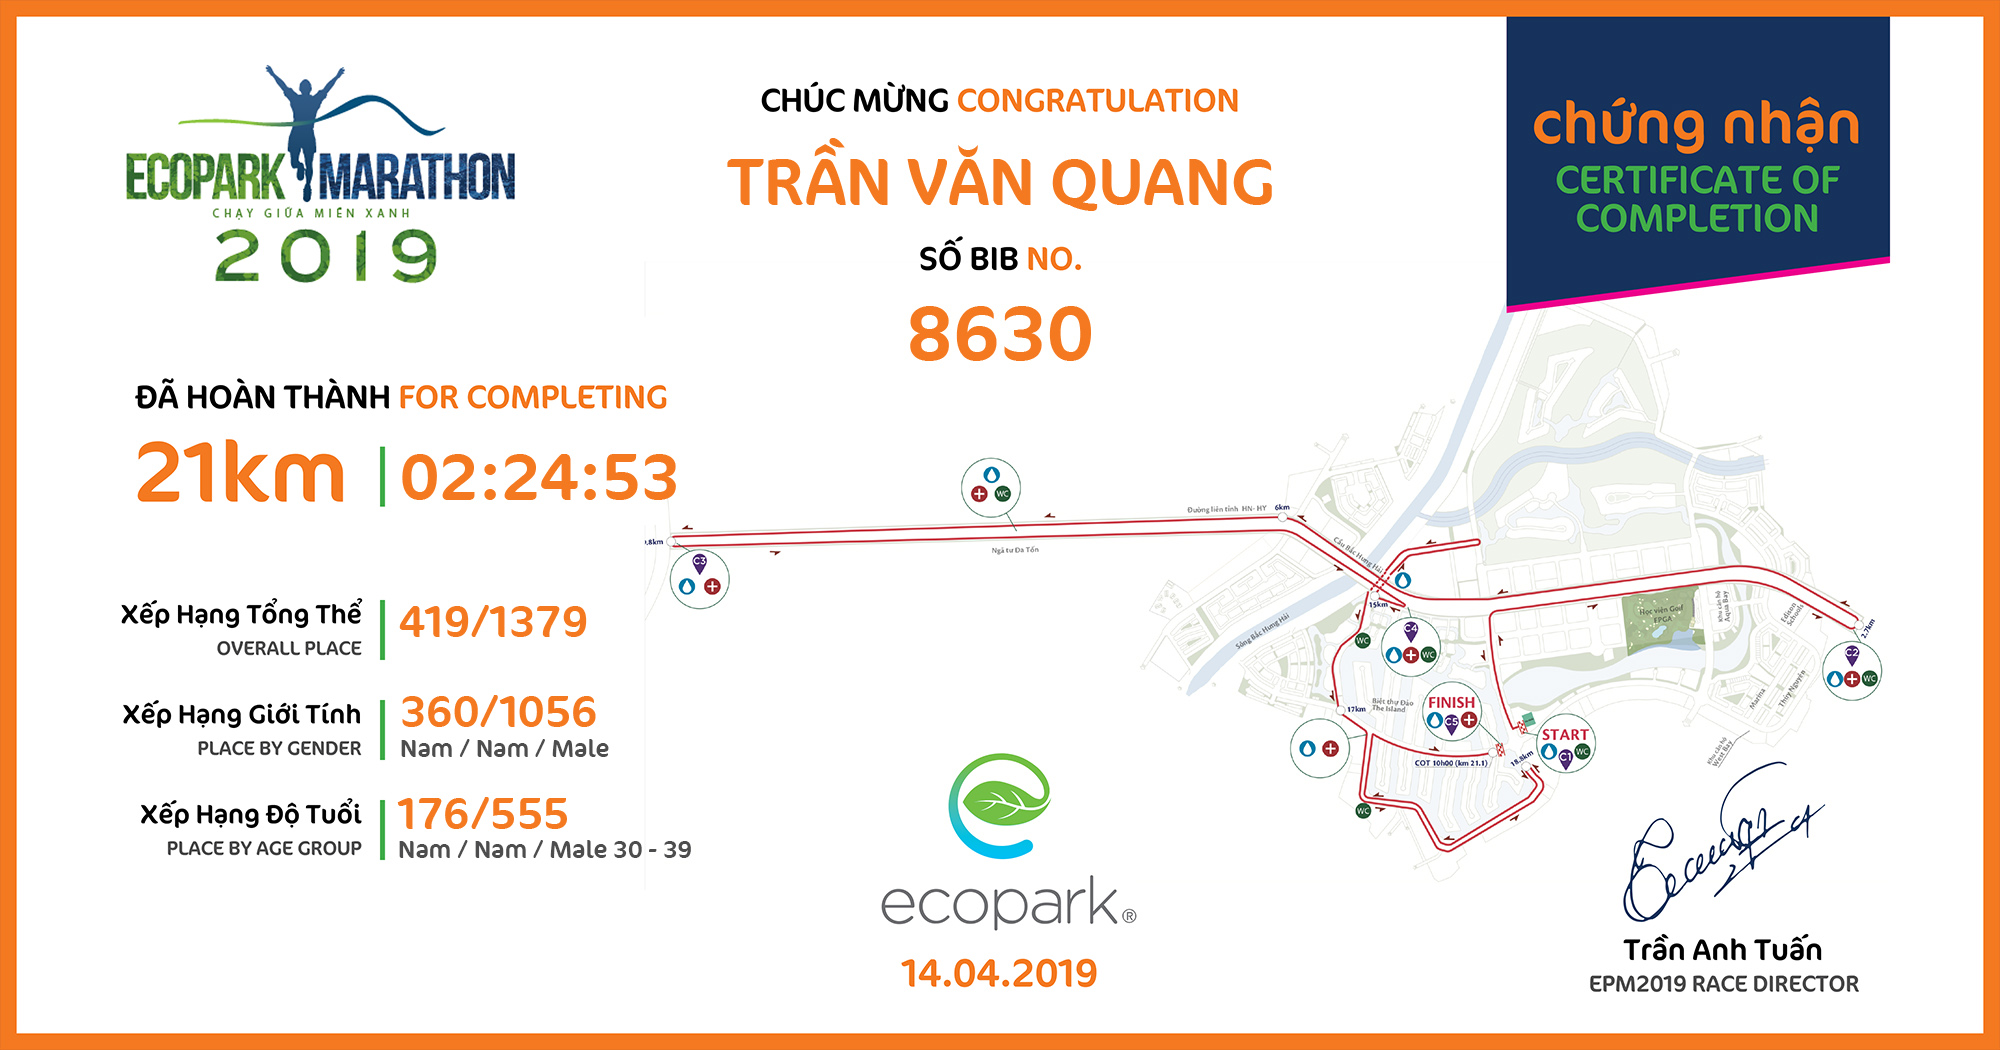 8630 - Trần Văn Quang